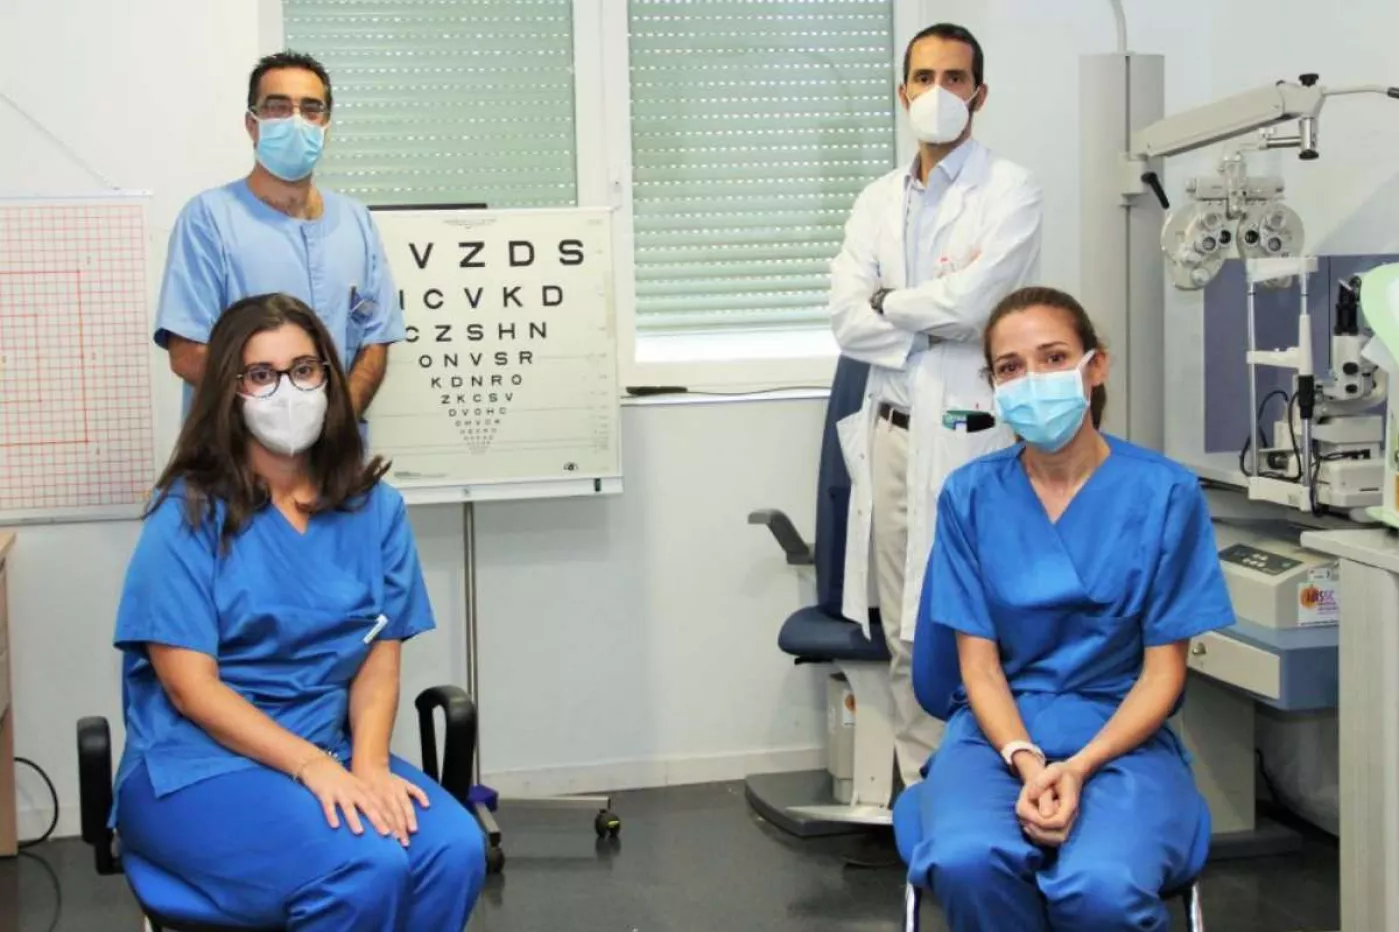 Julián García Feijoó, arriba a la izquierda, junto a Pedro Arriola, arriba a la derecha, con otros mimebros del equipo de Oftalmología del Hospital Clínico de Madrid.